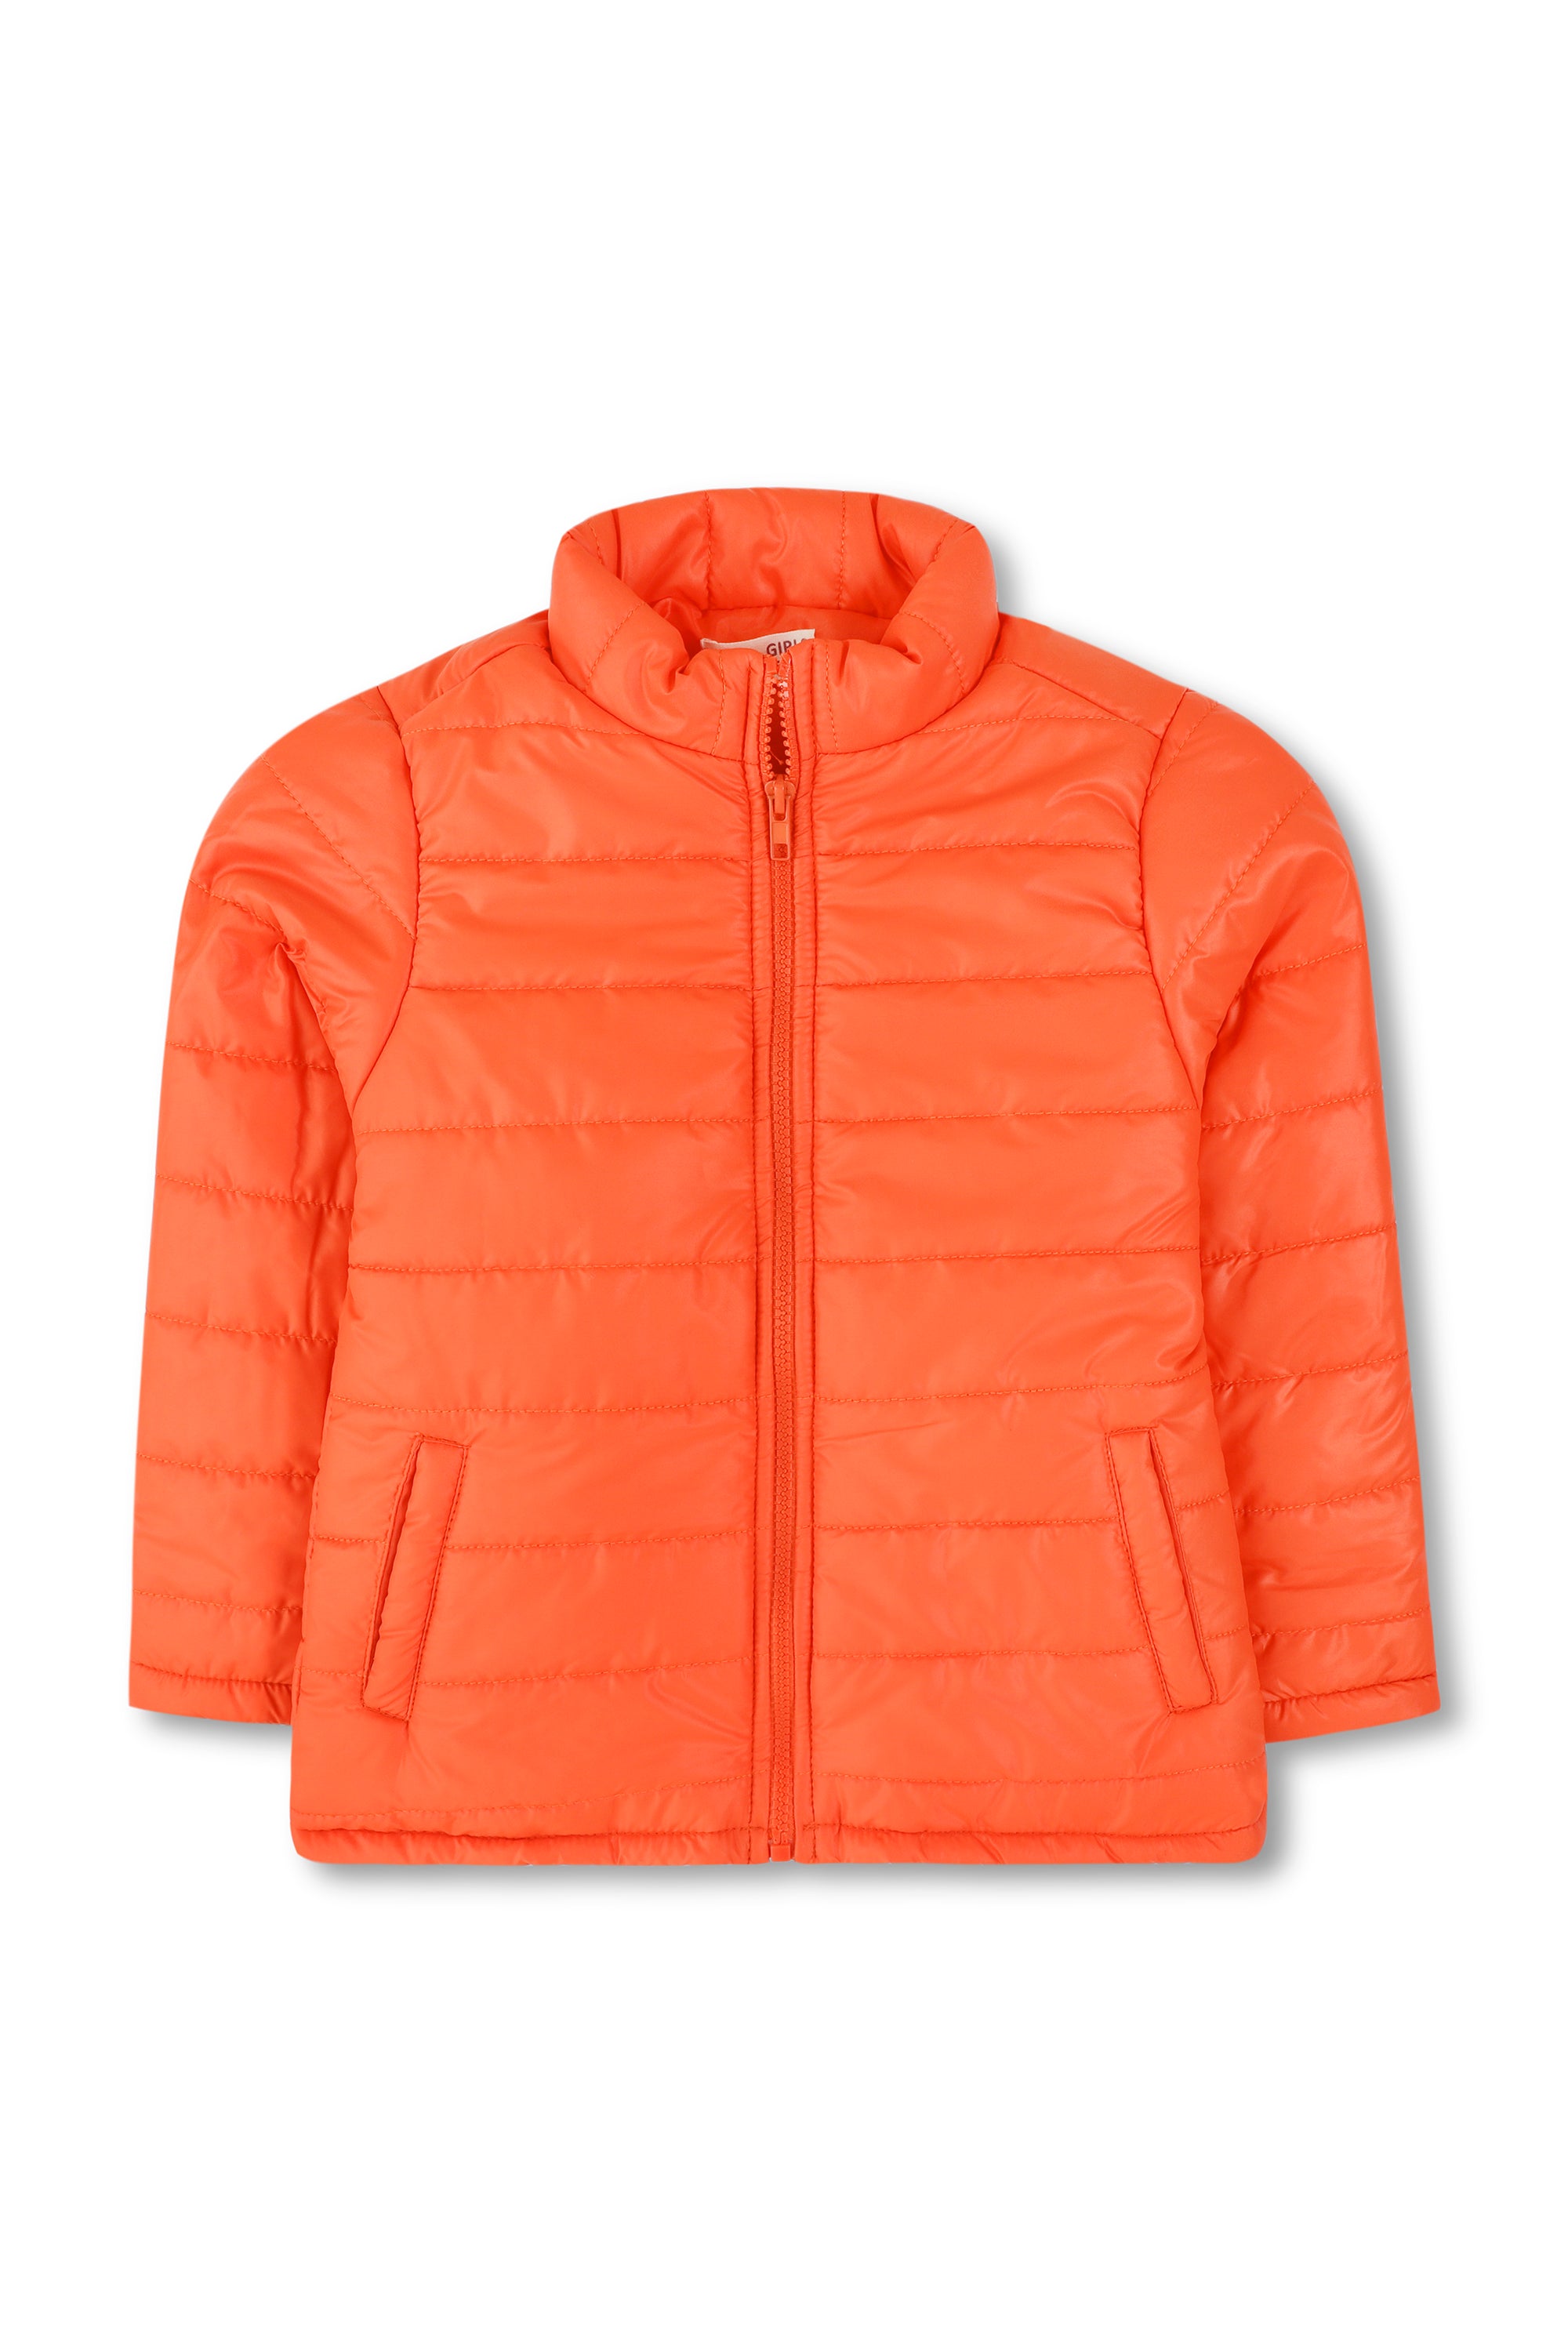 Girls Orange Puffer Jacket